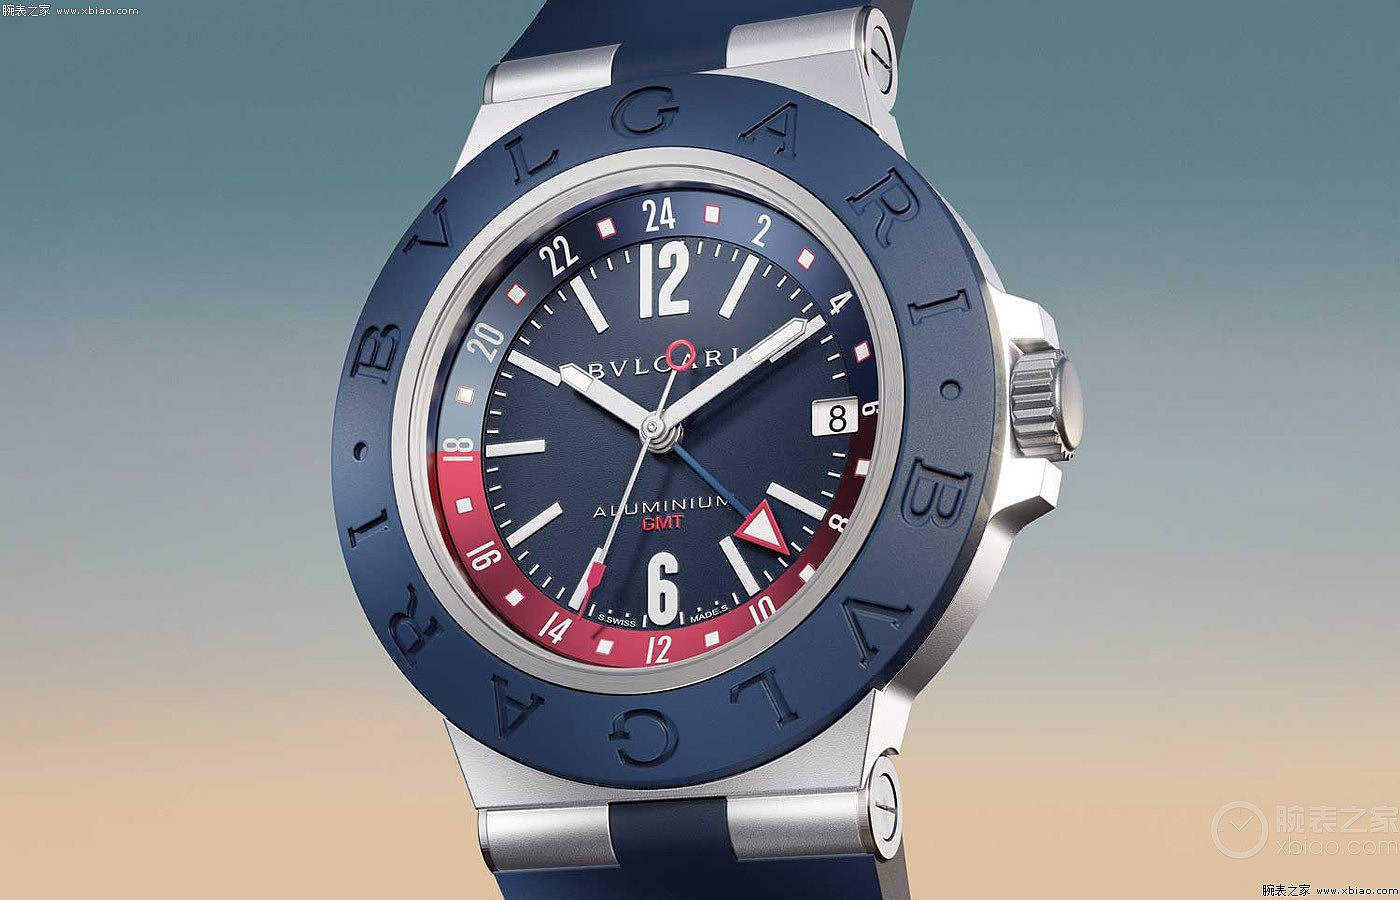 BVLGARI宝格丽推出全新Aluminium GMT腕表 - 2